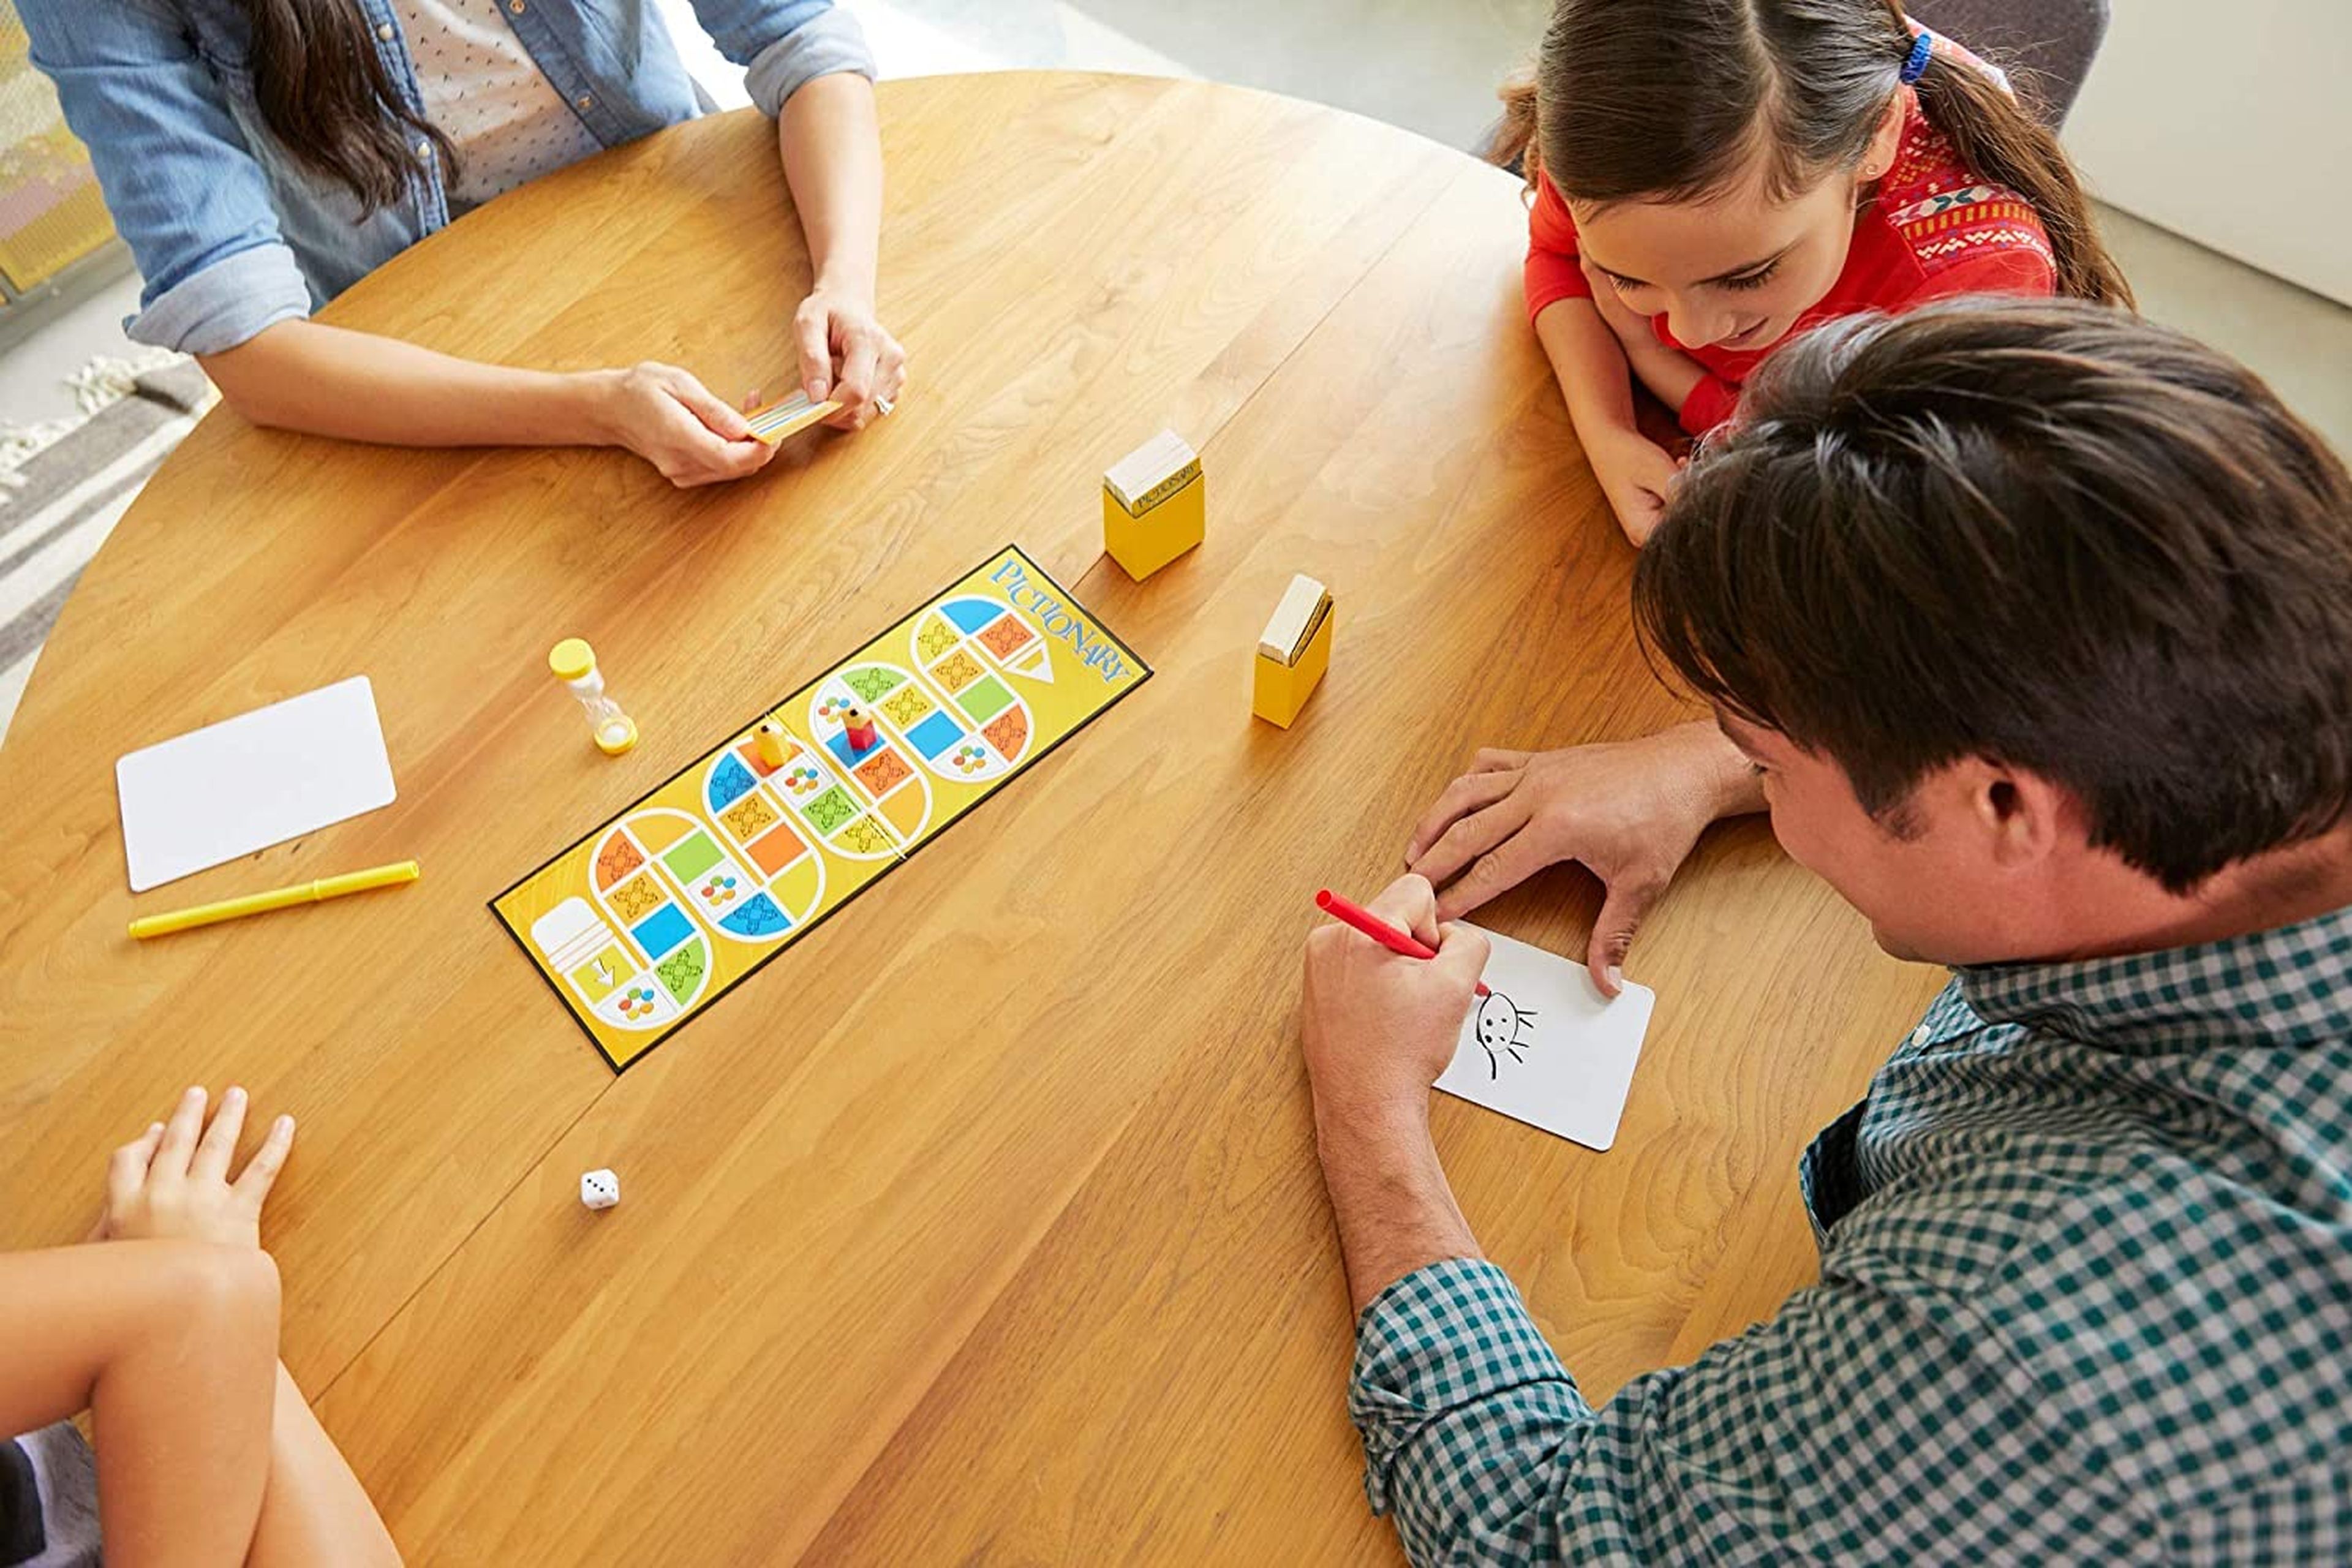 Clasificación apelación Venta anticipada 12 juegos de mesa que puedes hacer por ti mismo en casa | Computer Hoy